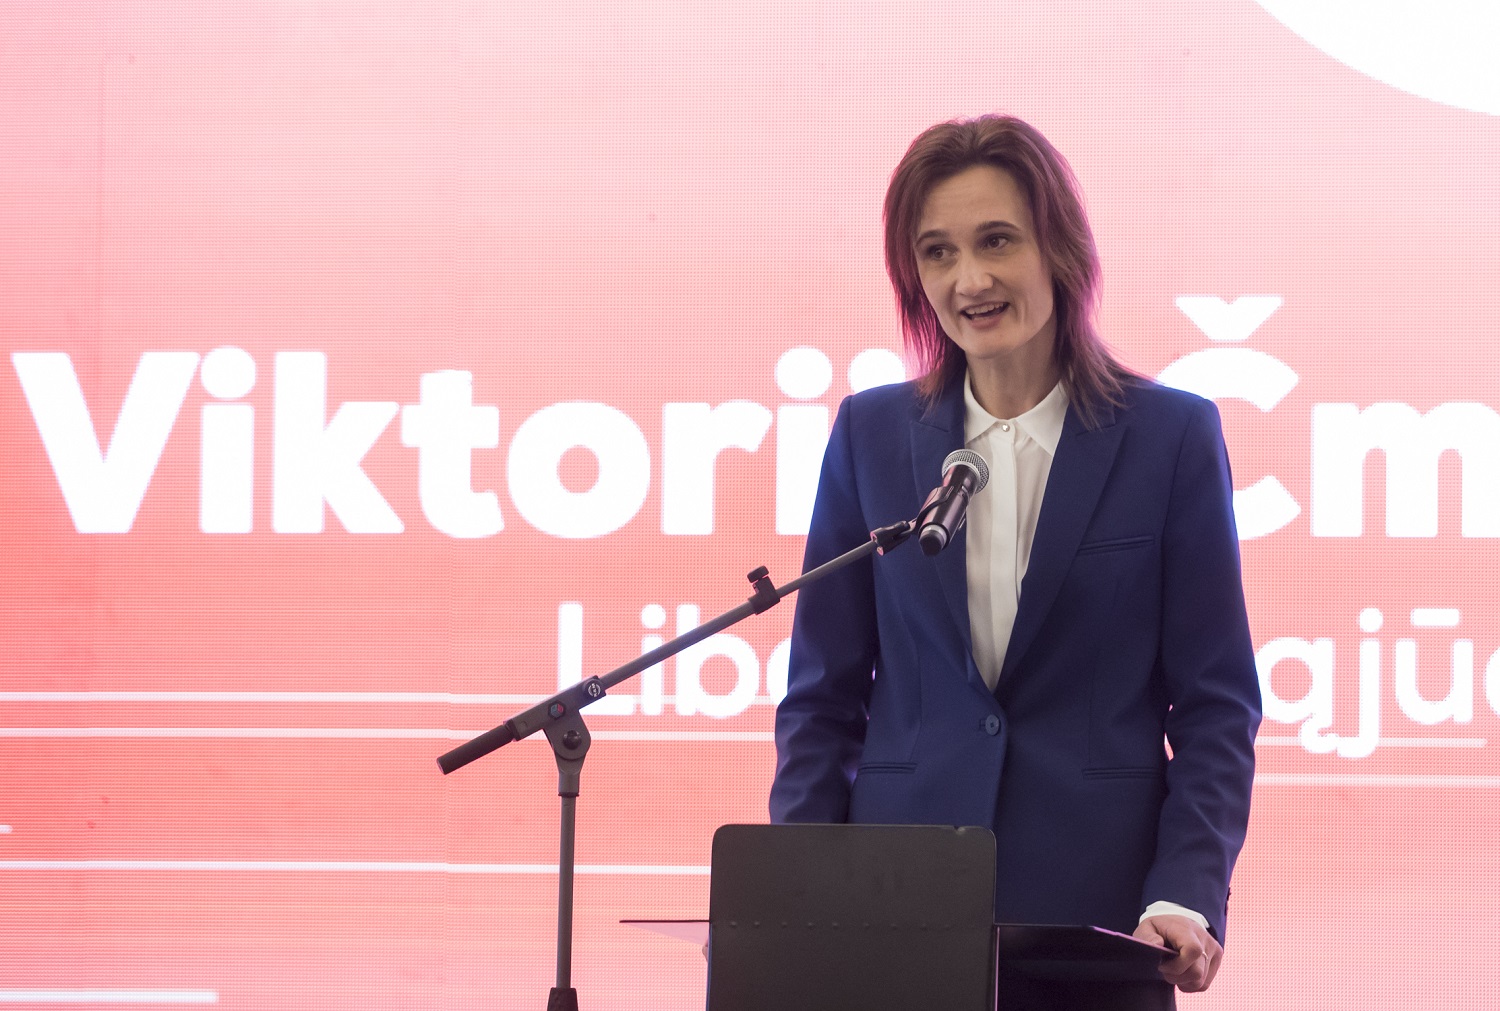 V. Čmilytė-Nielsen apie valstybės pareigūnų apsaugą: turėtume eiti vakarietišku keliu